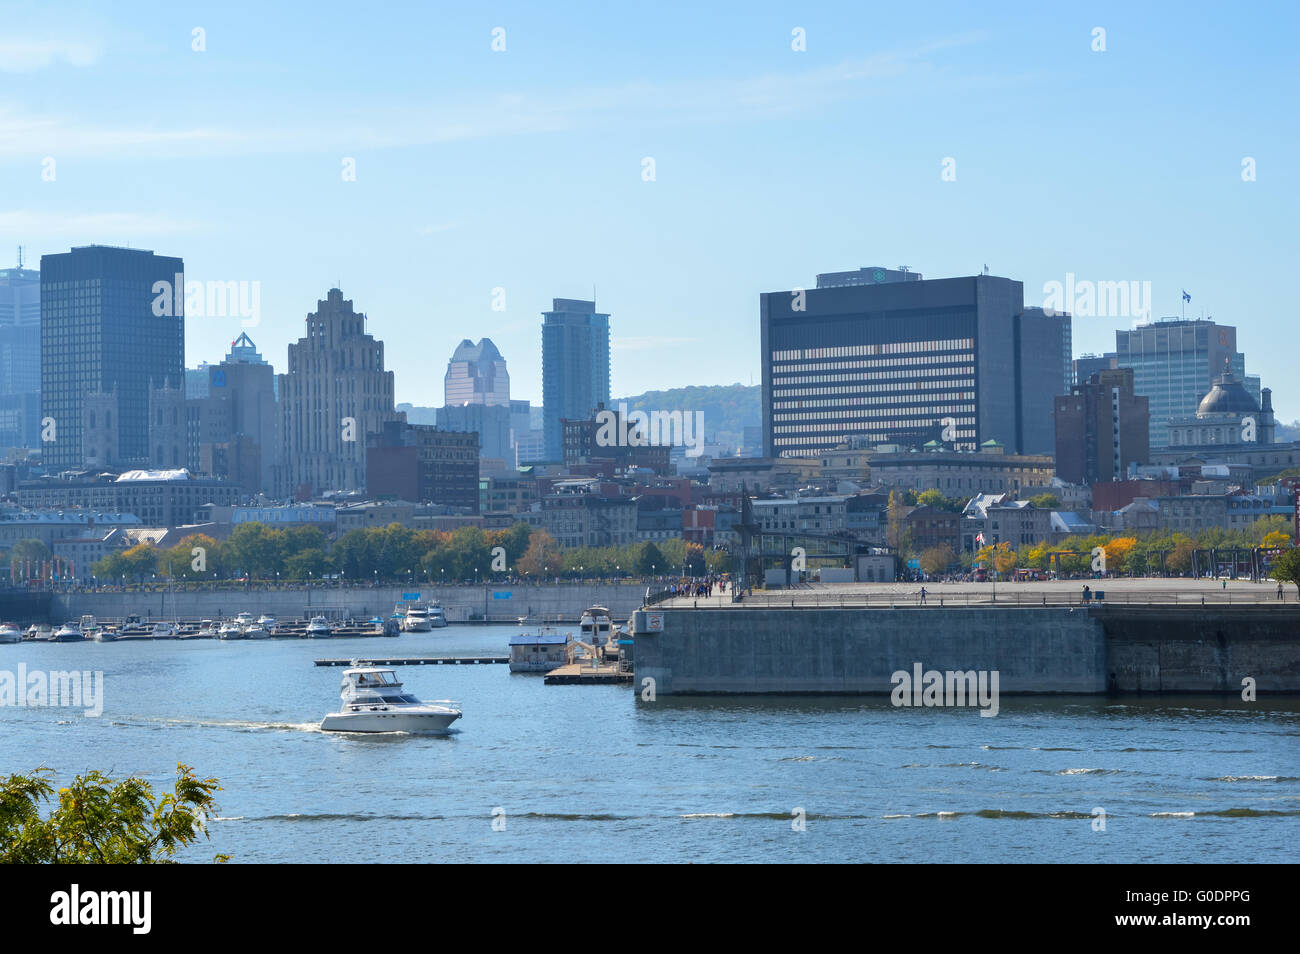 Montreal, Kanada - 27. August 2014: Skyline von Montreal am alten Hafen, Montreal, Quebec, Kanada. Menschen können in gesehen werden. Stockfoto